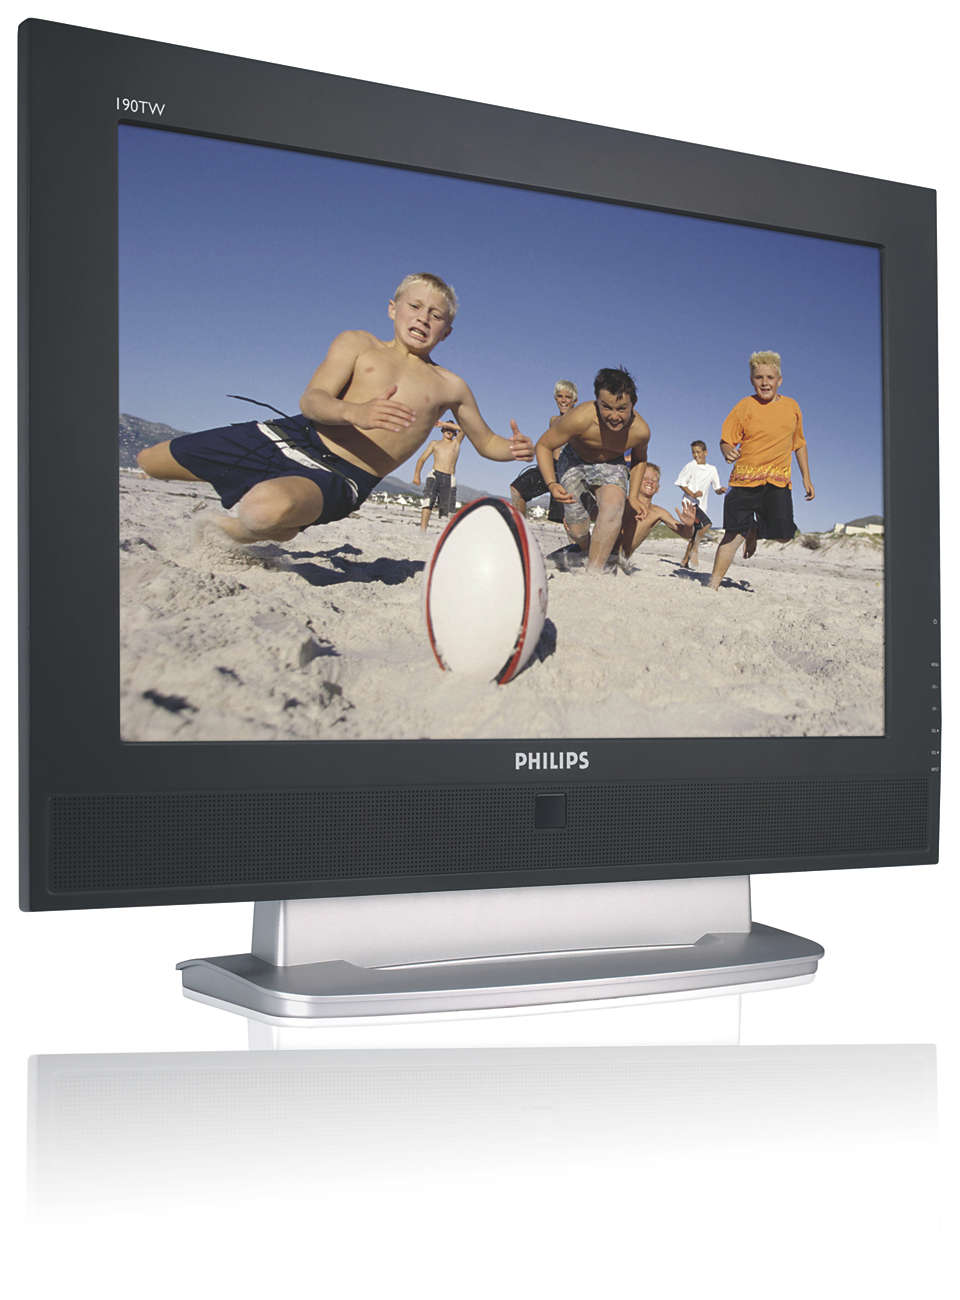 Połączenie wielofunkcyjnego monitora LCD i telewizora